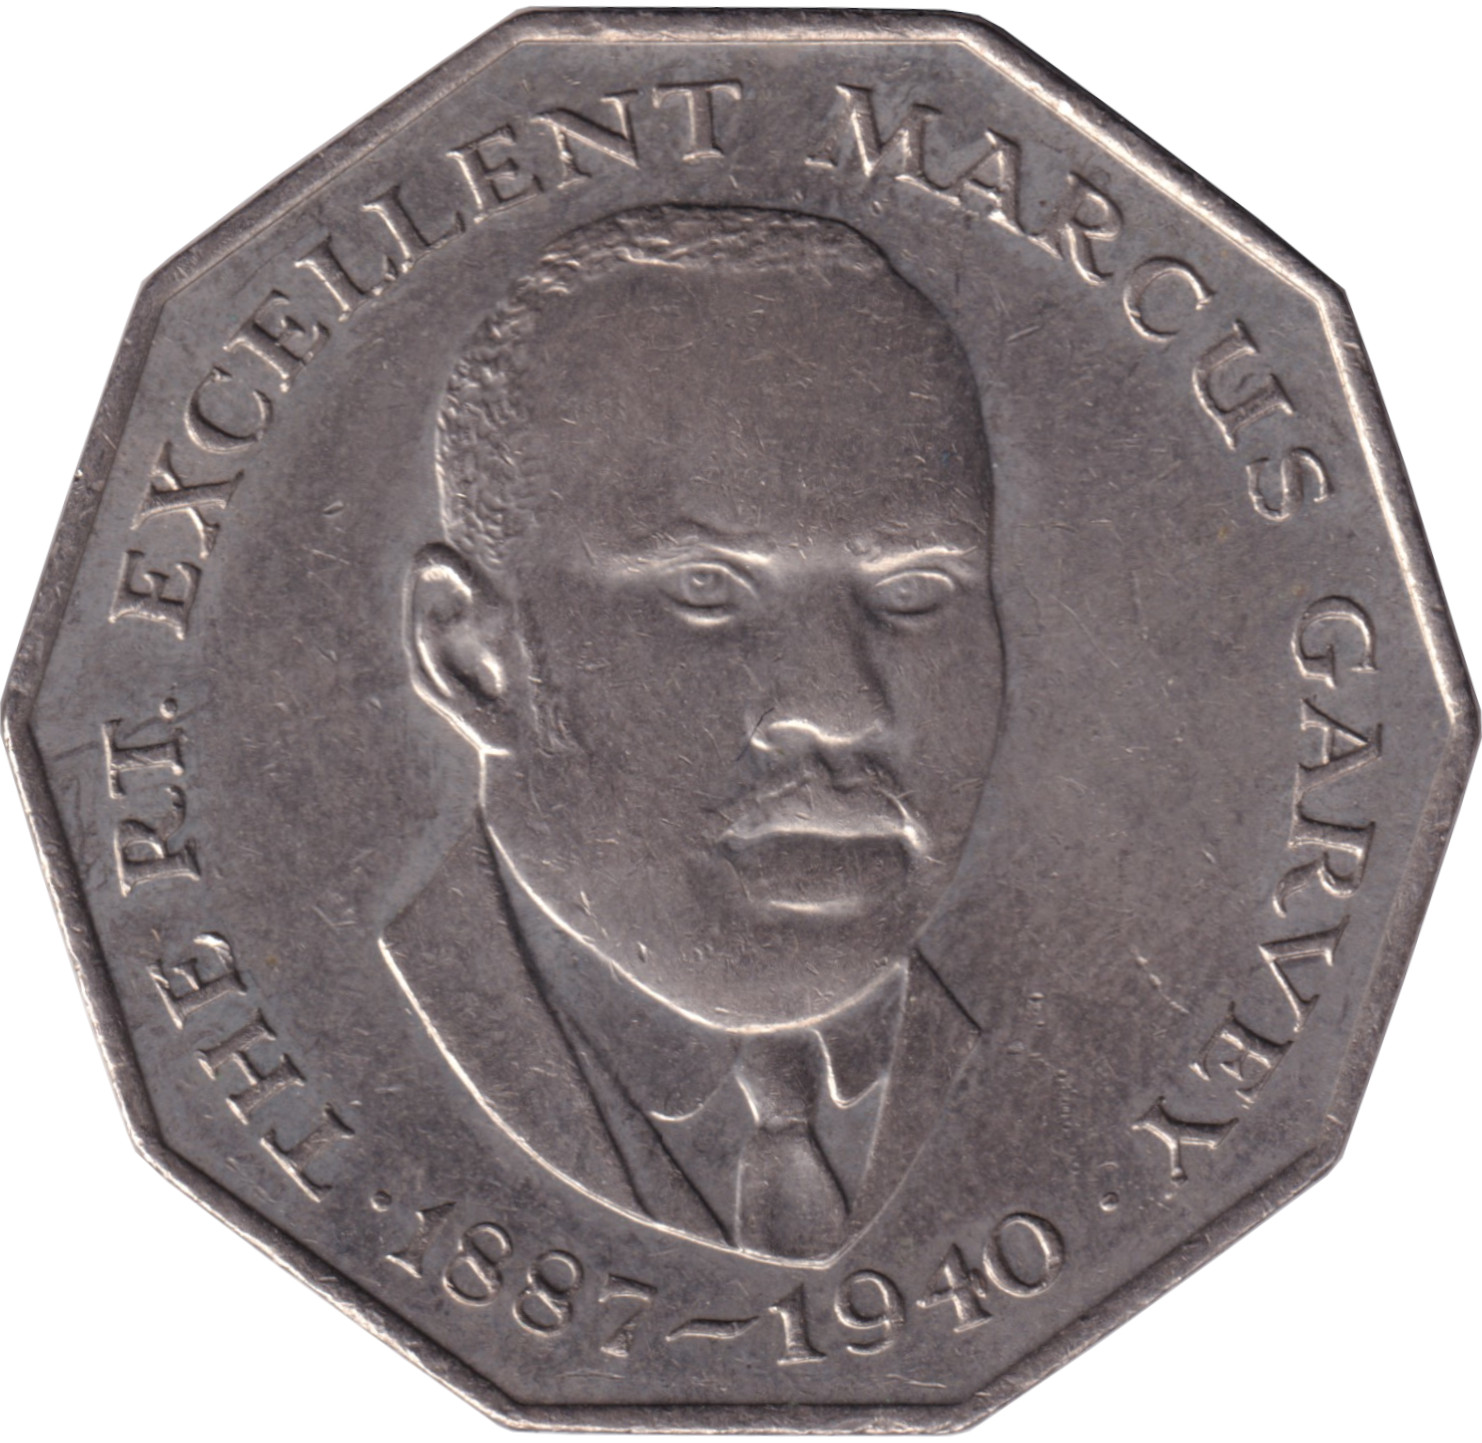 50 cents - Marcus Garvey - Grande légende